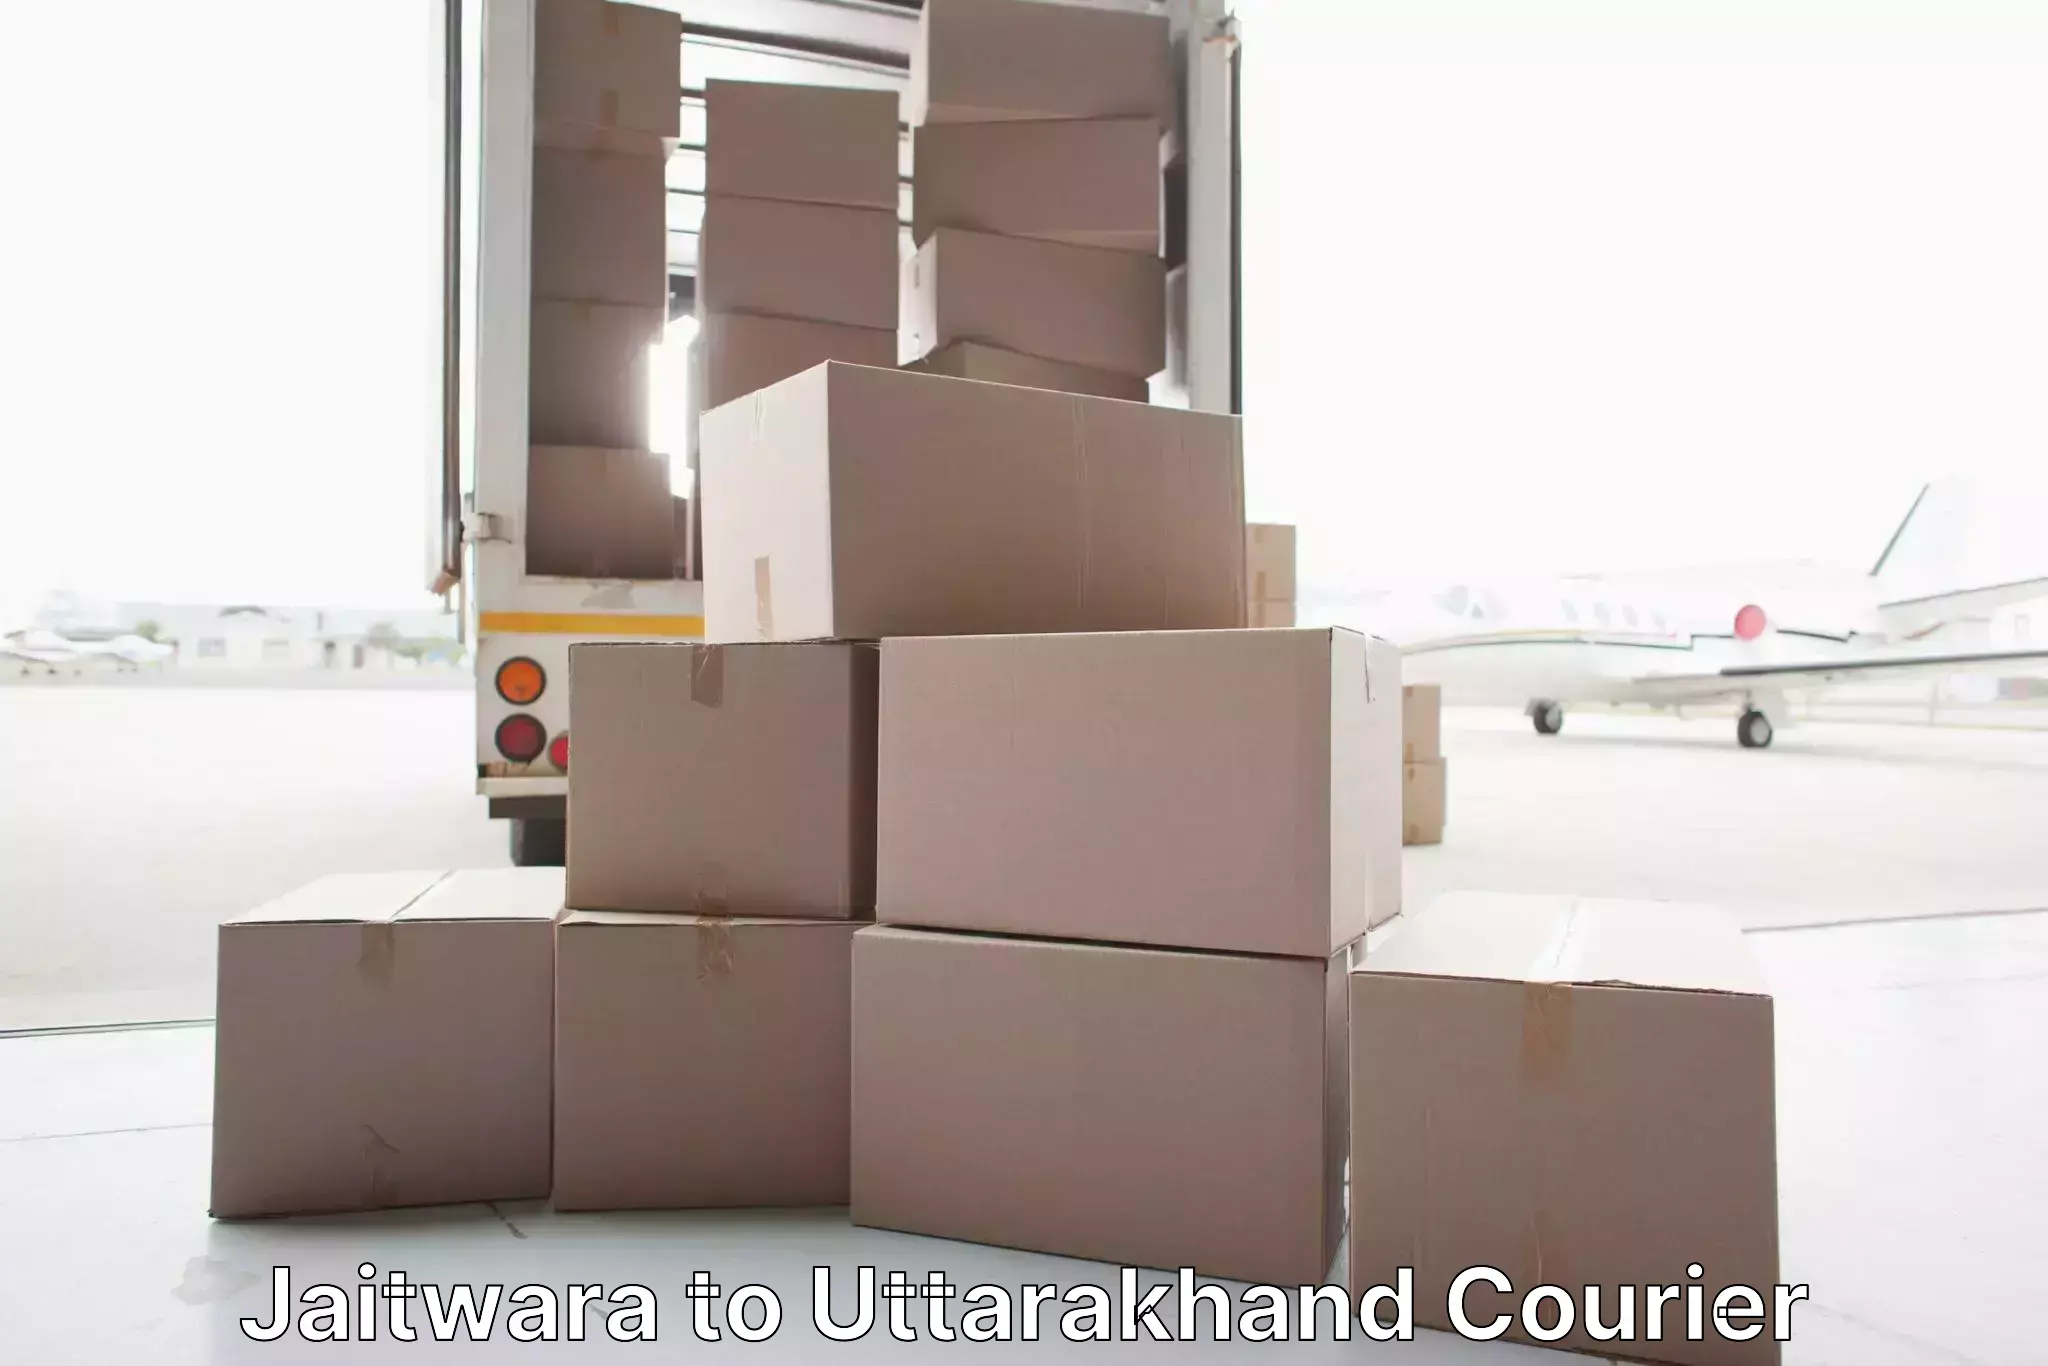 Quality moving company Jaitwara to Uttarakhand